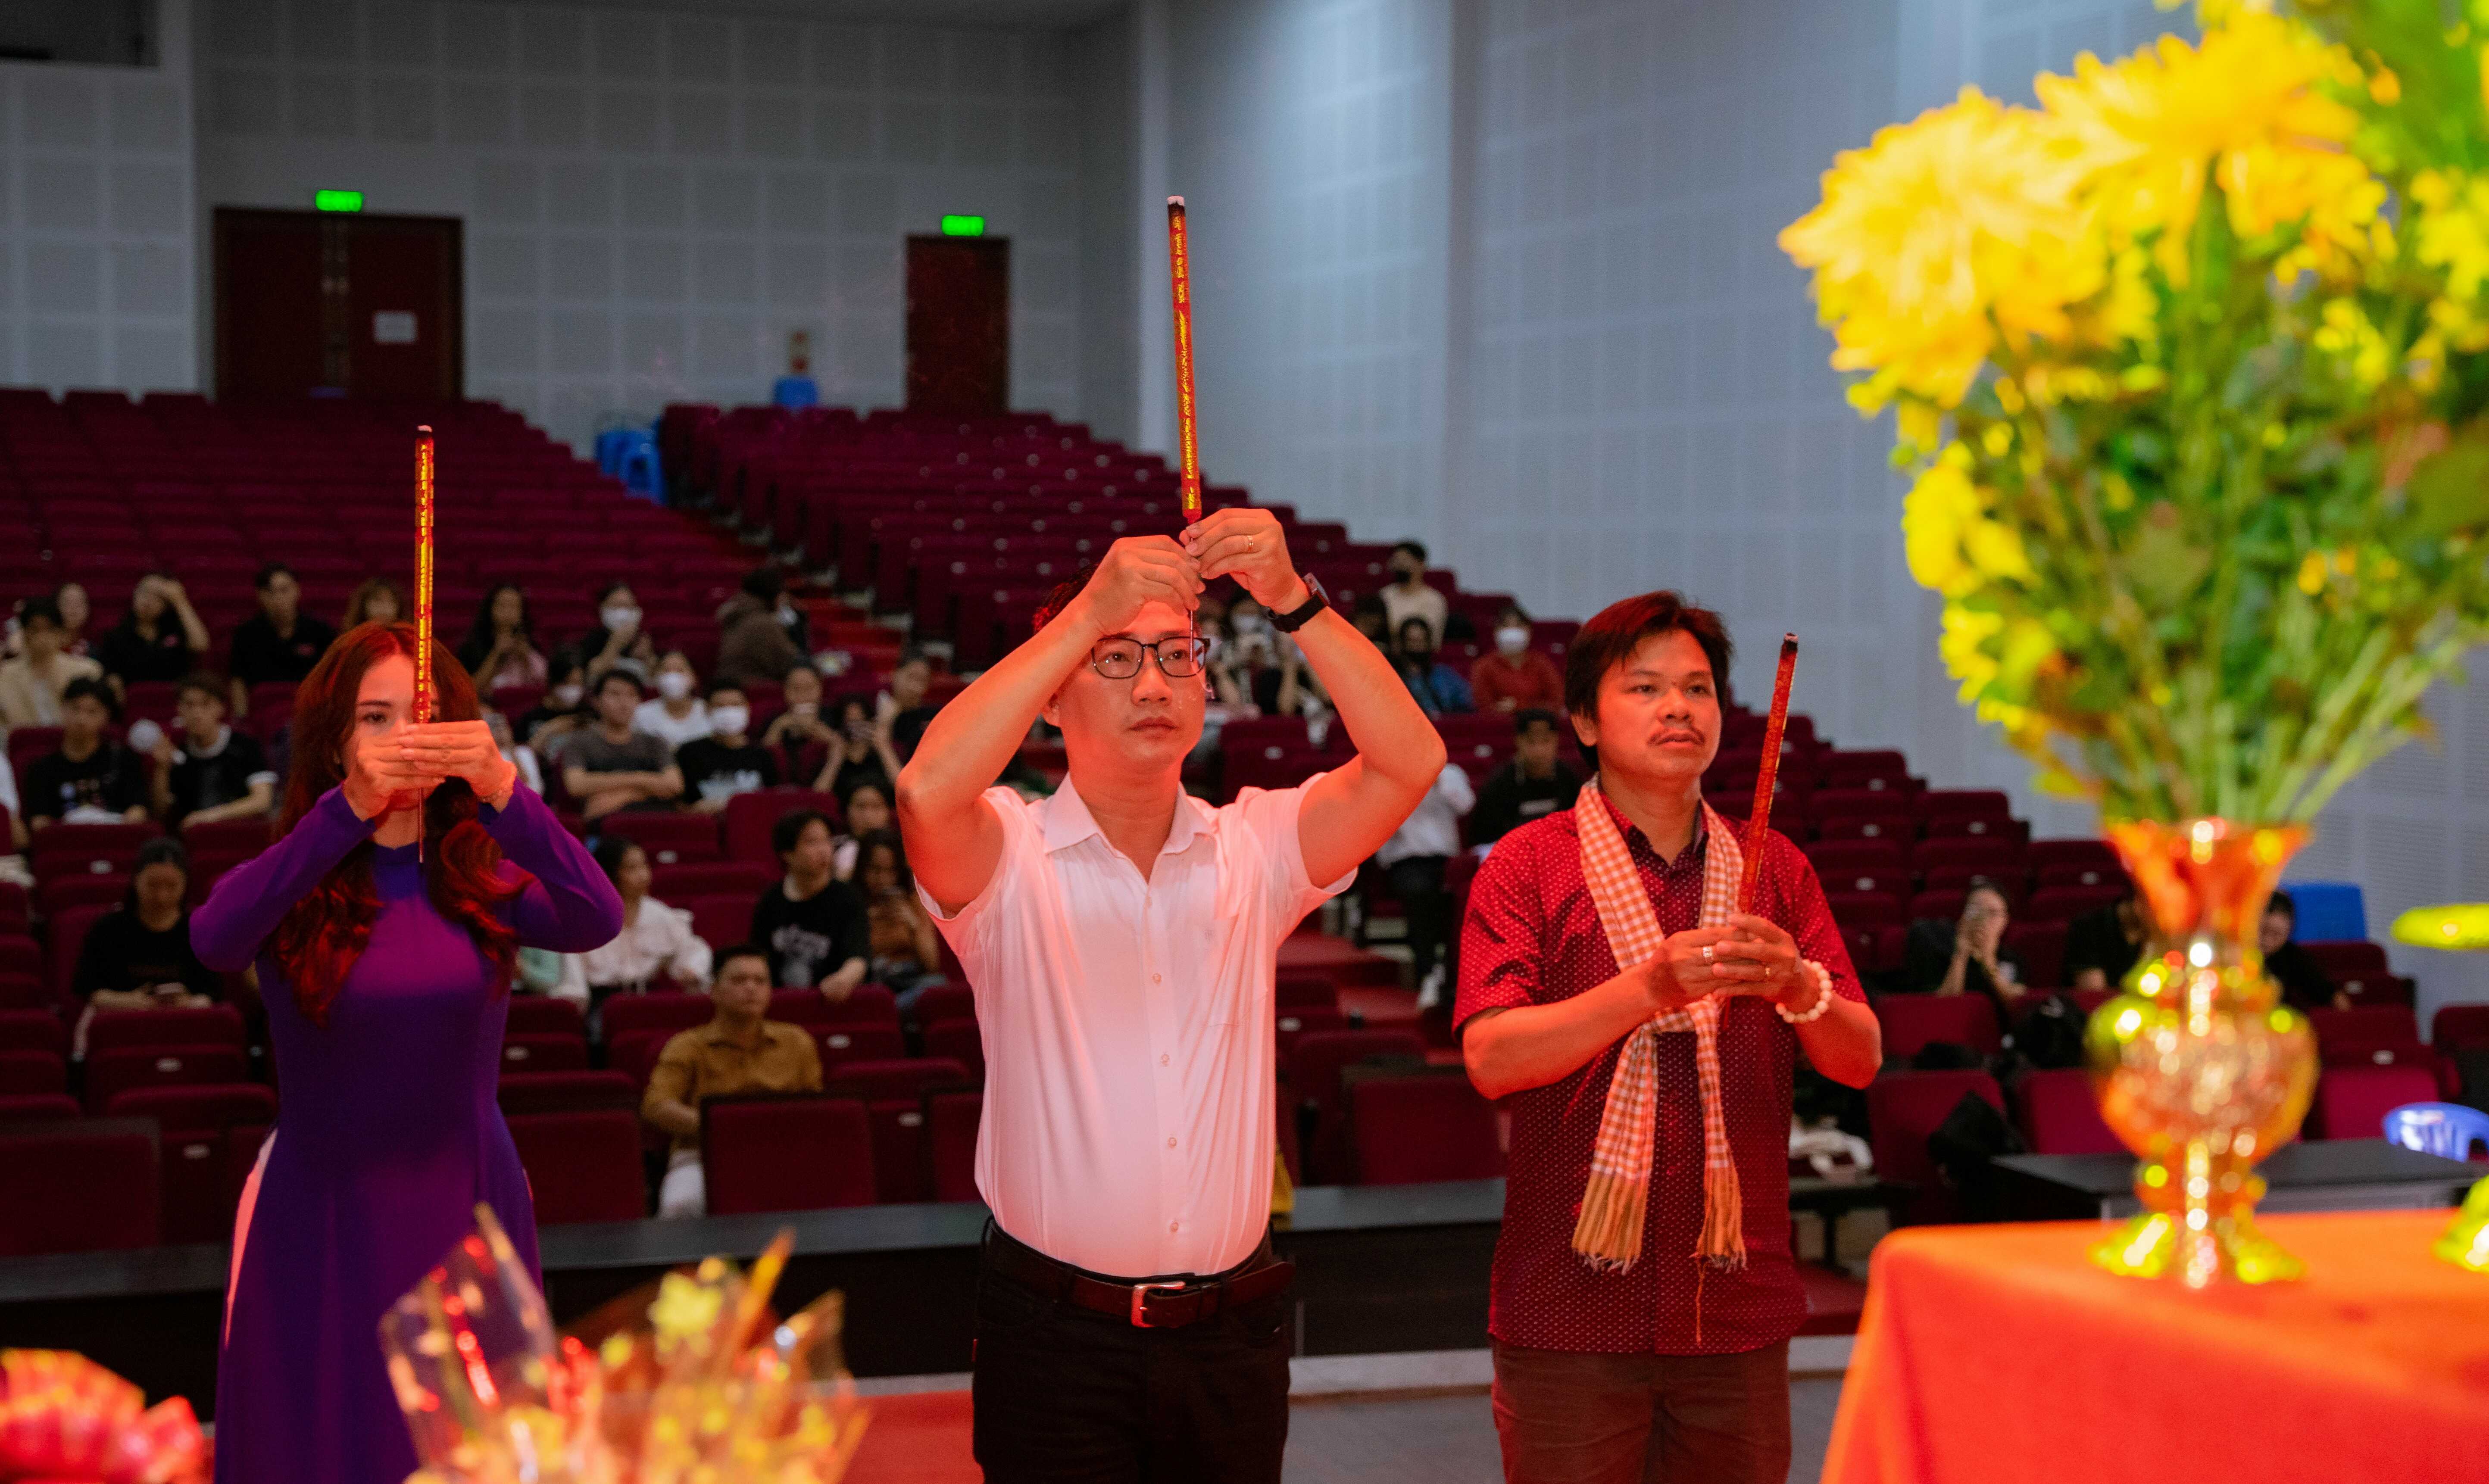 Khoa Quản lý văn hóa, nghệ thuật bet365 mobile bet
. Hồ Chí Minh tổ chức Lễ giỗ Tổ truyền thống ngành sân khấu